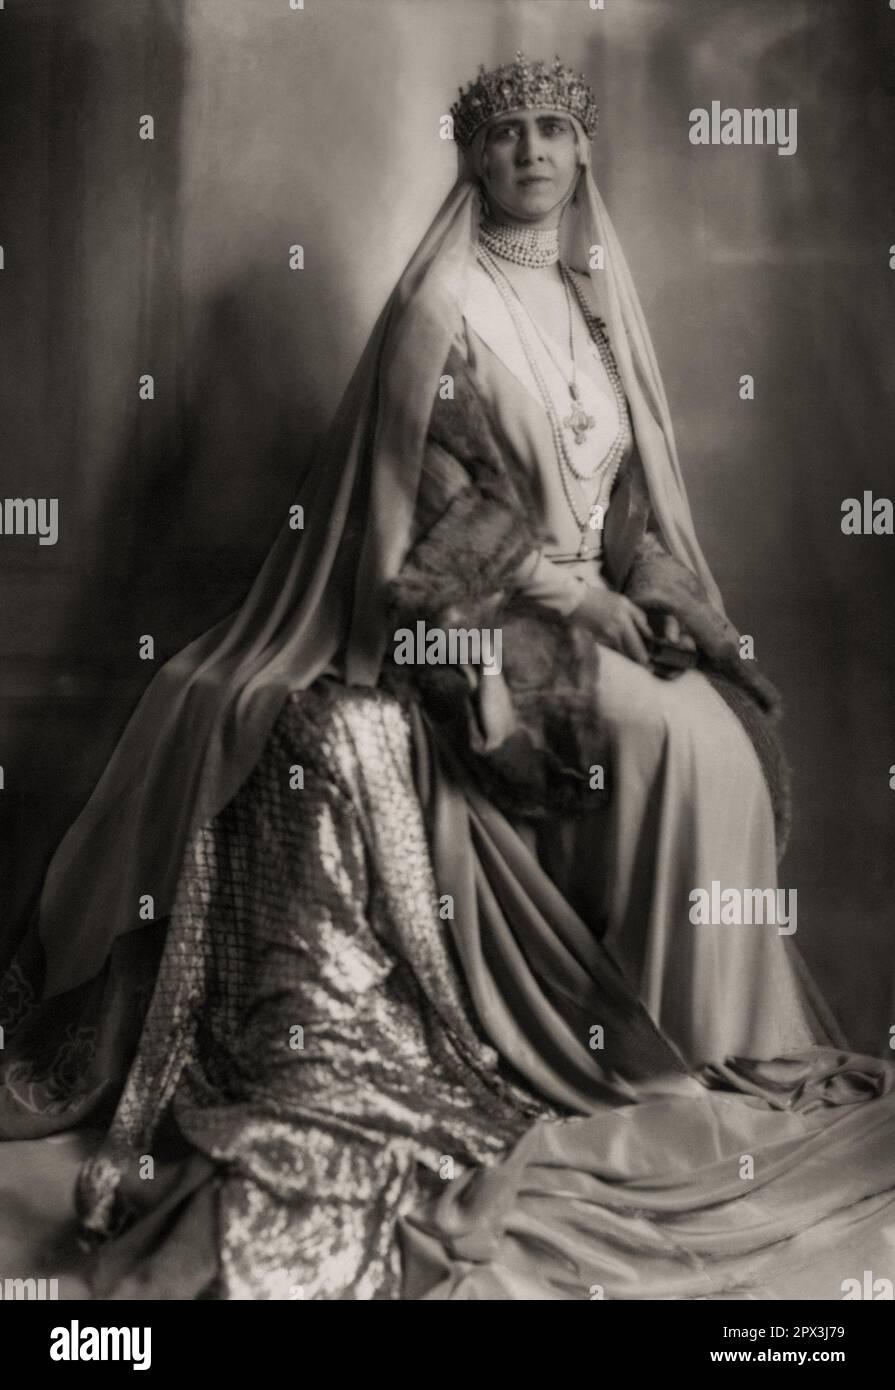 1929 , Roma , ITALIE : la Reine SOPHIE Dorothea Ulrike de GRÈCE ( 1870 - 1932 ), née princesse de PRUSSE de Grèce et du Danemark , soeur de l'empereur Guillaume II d'Allemagne , mariée avec ROI de GRÈCE KONSTANTINOS I ( Costantine , 1868 - 1923 ). A été la mère de 3 Rois de Grèce ( GIORGIOS II , ALEXANDROS I et PAULOS I ) et princesse Irene ( 1904 - 1974 ) mariée au prince italien Aimone de SAVOIA AOSTE Duc de SPOLETO . Photo d'EVA BARRETT ( 1879 - 1950 ). - GRECIA - MAISON DU SCHLESWIG HOLSTEIN SONDERBURG GLUCKSBURG - COSTANTINO - SOPHIA - SOFIA - REGINA - HISTOIRE - FOTO STORICHE - PORT Banque D'Images